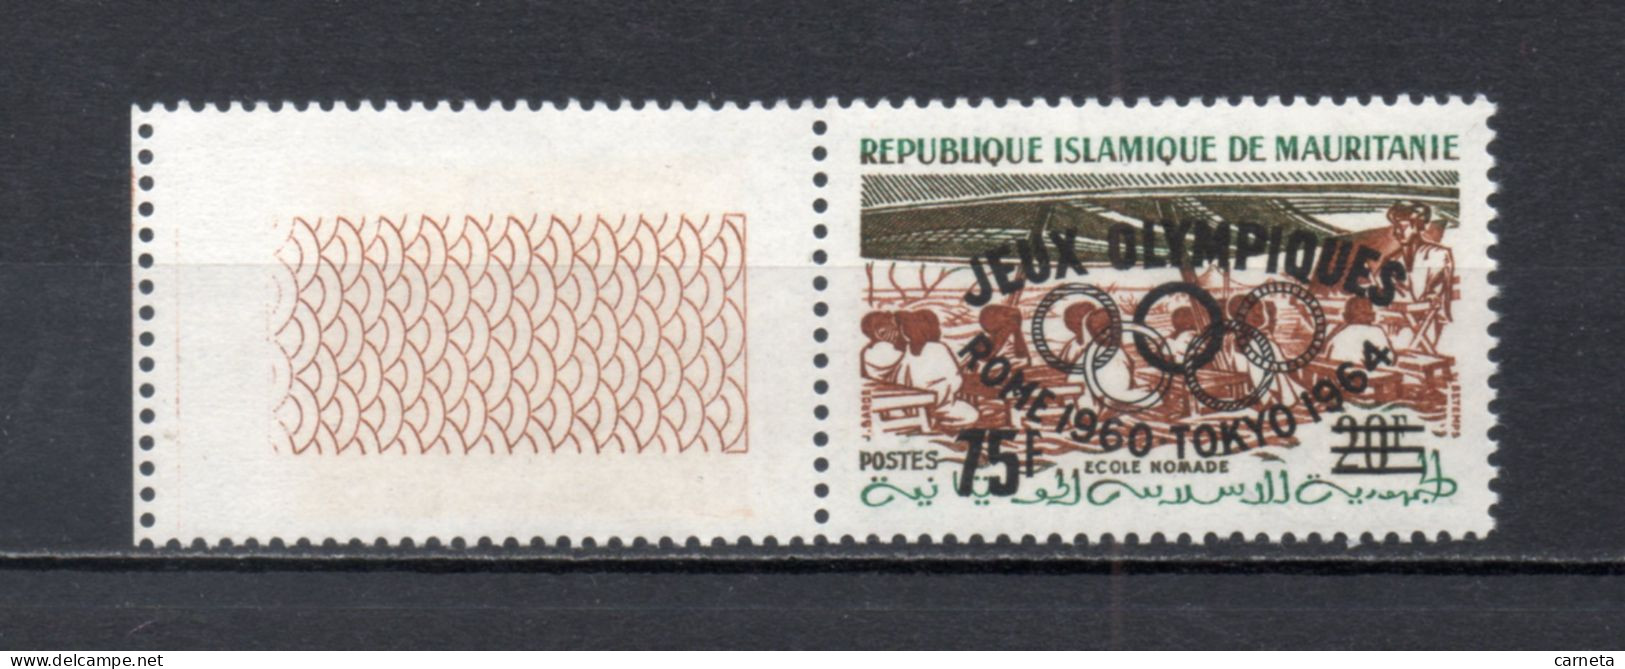 MAURITANIE  N° 154D   NEUF SANS CHARNIERE   COTE 10.50€    ECOLE NOMADE JEUX OLYMPIQUES TOKYO - Mauretanien (1960-...)